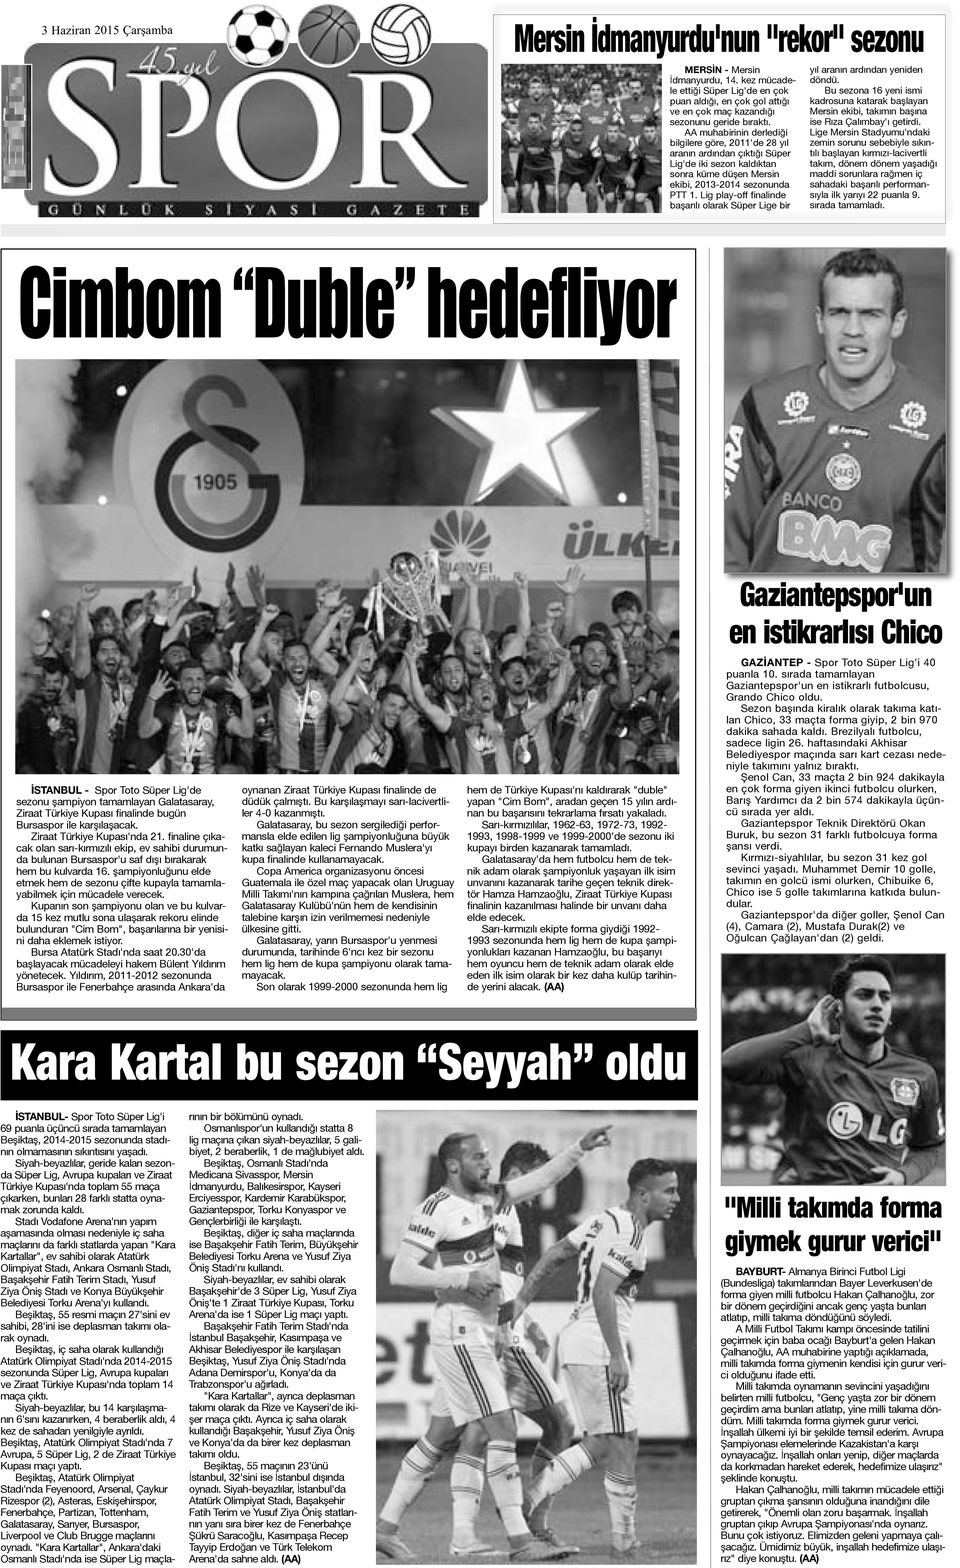 AA muhabirinin derlediği bilgilere göre, 2011'de 28 yıl aranın ardından çıktığı Süper Lig'de iki sezon kaldıktan sonra küme düşen Mersin ekibi, 2013-2014 sezonunda PTT 1.